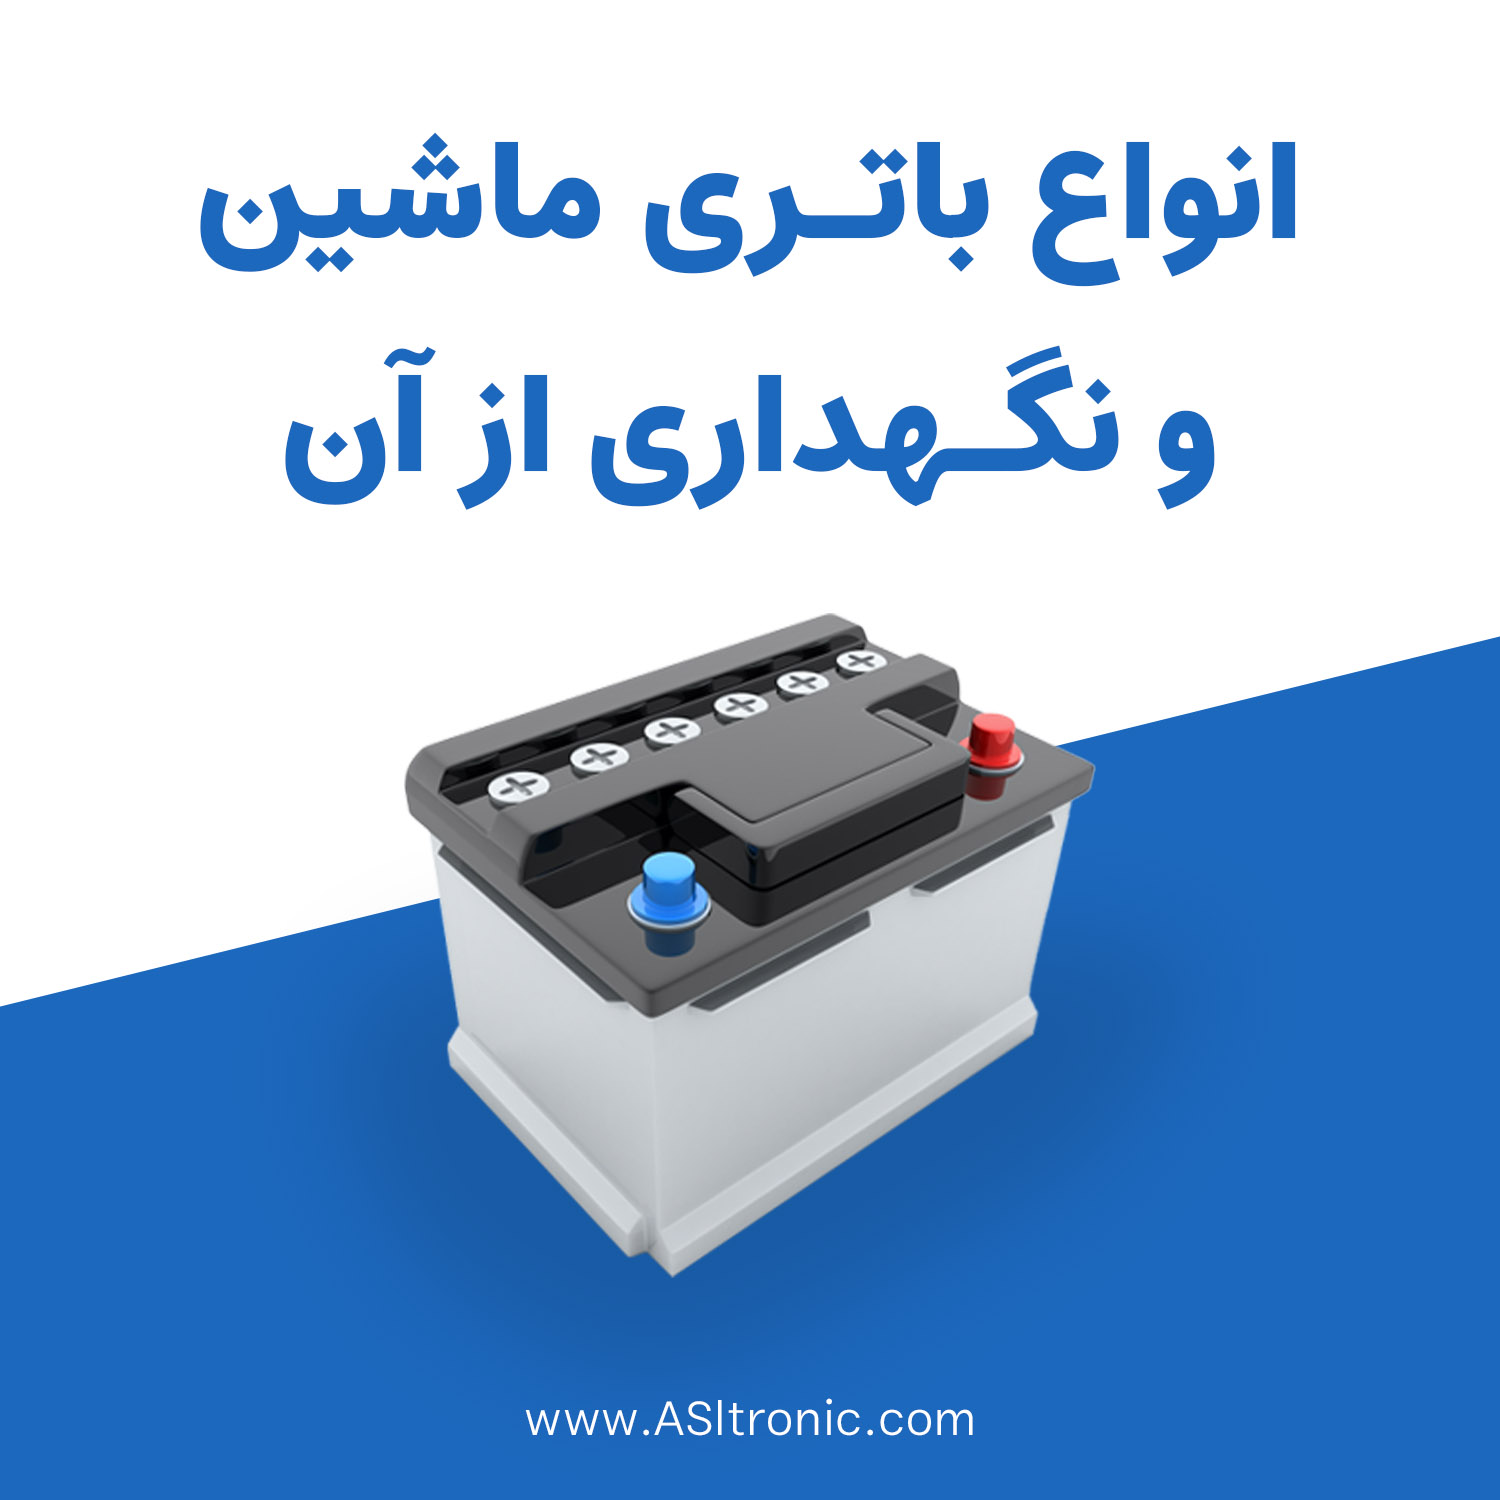 باتری ماشین - باتری خودرو - نگهداری باتری - اصل ترونیک - تسترونیک